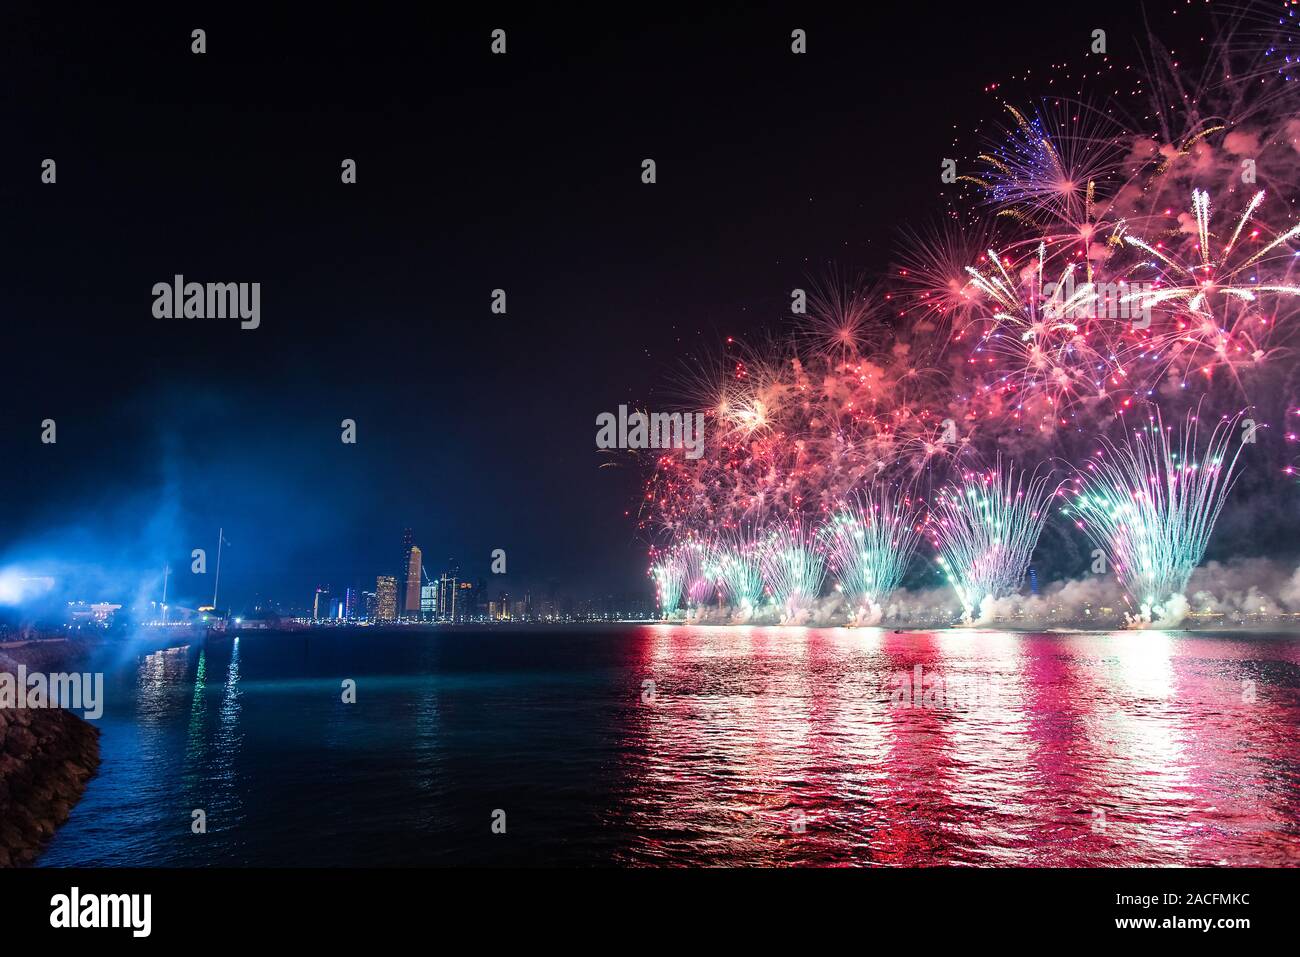 Fireworks over Abu Dhabi cityscape for the United Arab Emirates national day celebration Stock Photo